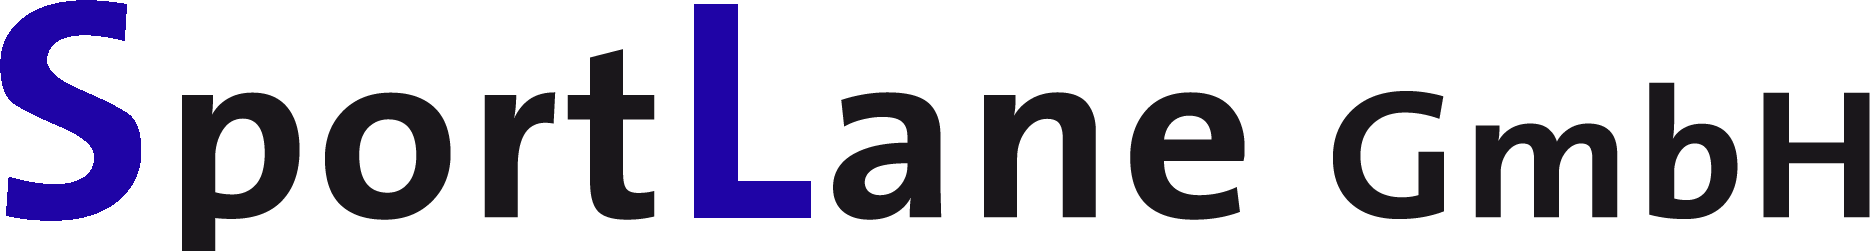 Logo Sportlane GmbH